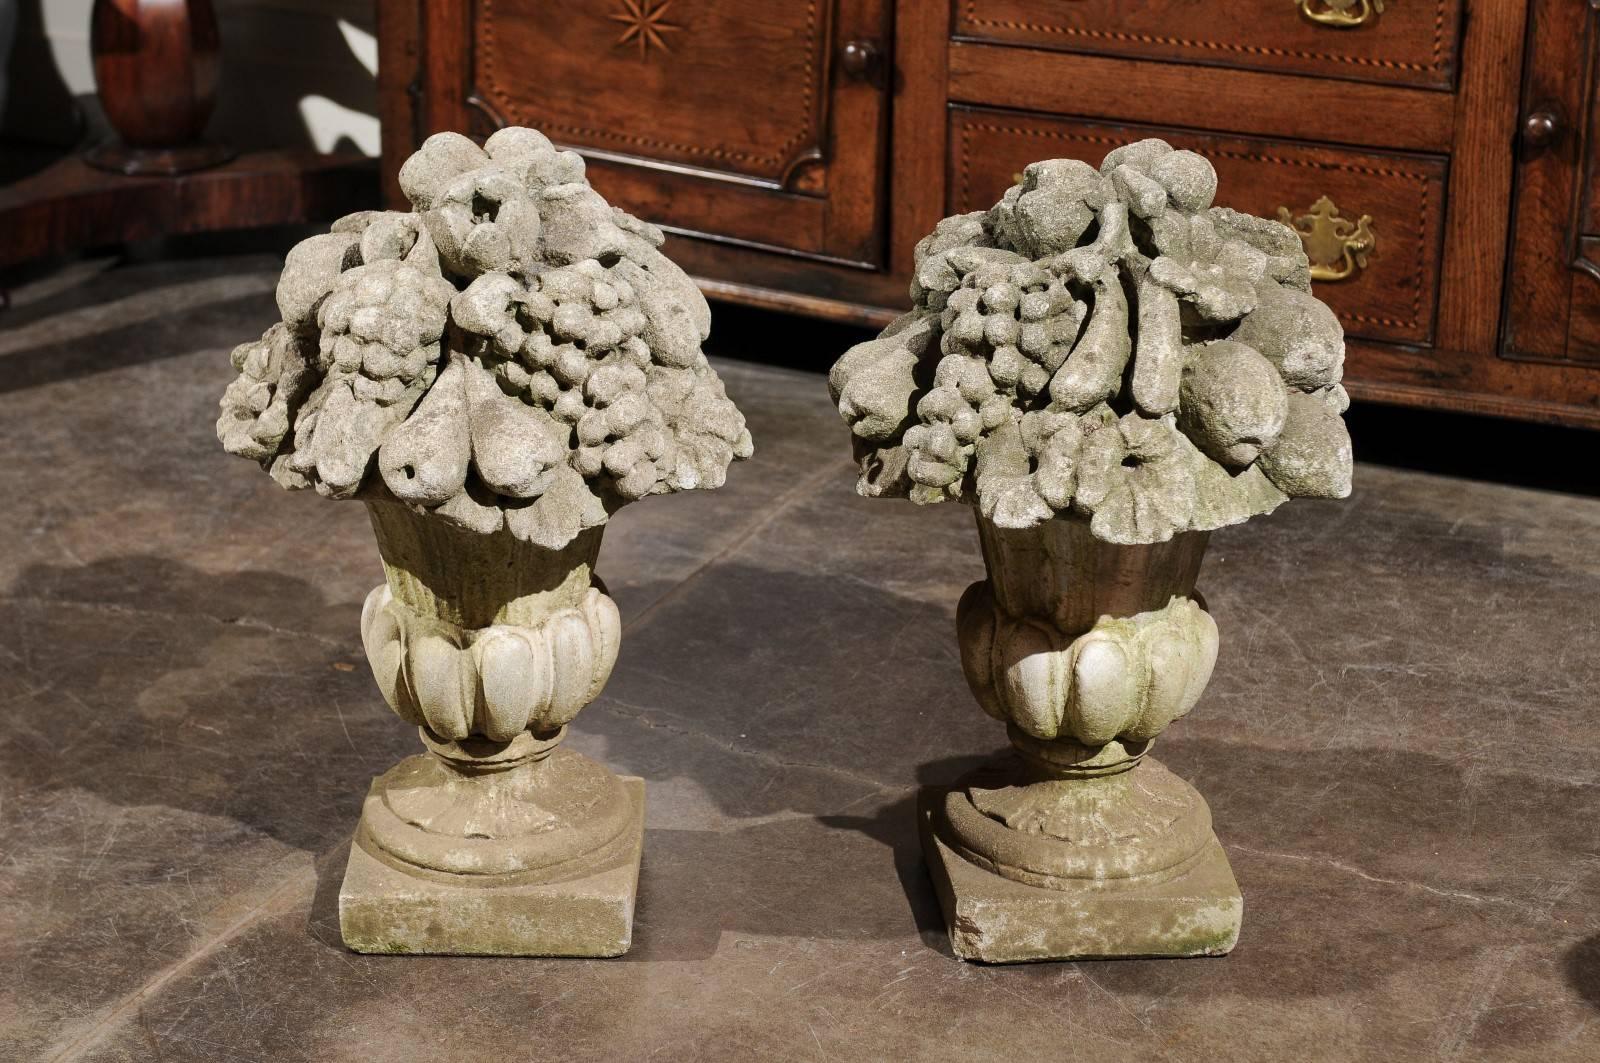 Dieses Paar französischer Steinskulpturen aus dem frühen 20. Jahrhundert zeigt zwei Médicis-Vasen mit Gadroon-Dekor auf einem quadratischen Sockel. Dieses exquisite Paar französischer Steinskulpturen aus dem frühen 20. Jahrhundert zeigt zwei